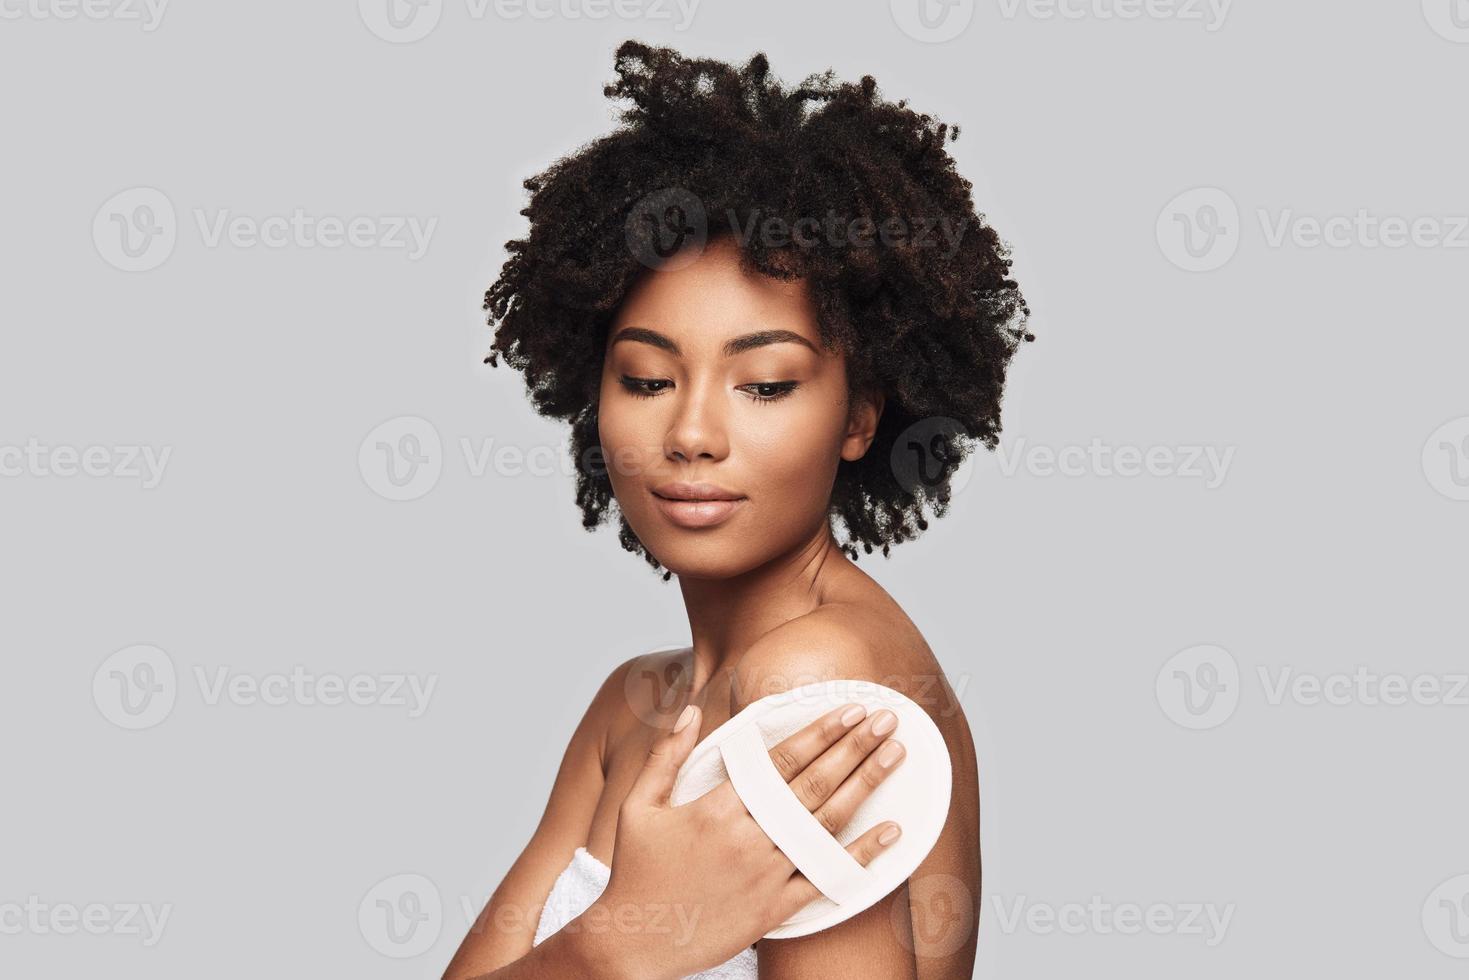 slät och rena hud. attraktiv ung afrikansk kvinna applicering rengöring svamp och leende medan stående mot grå bakgrund foto